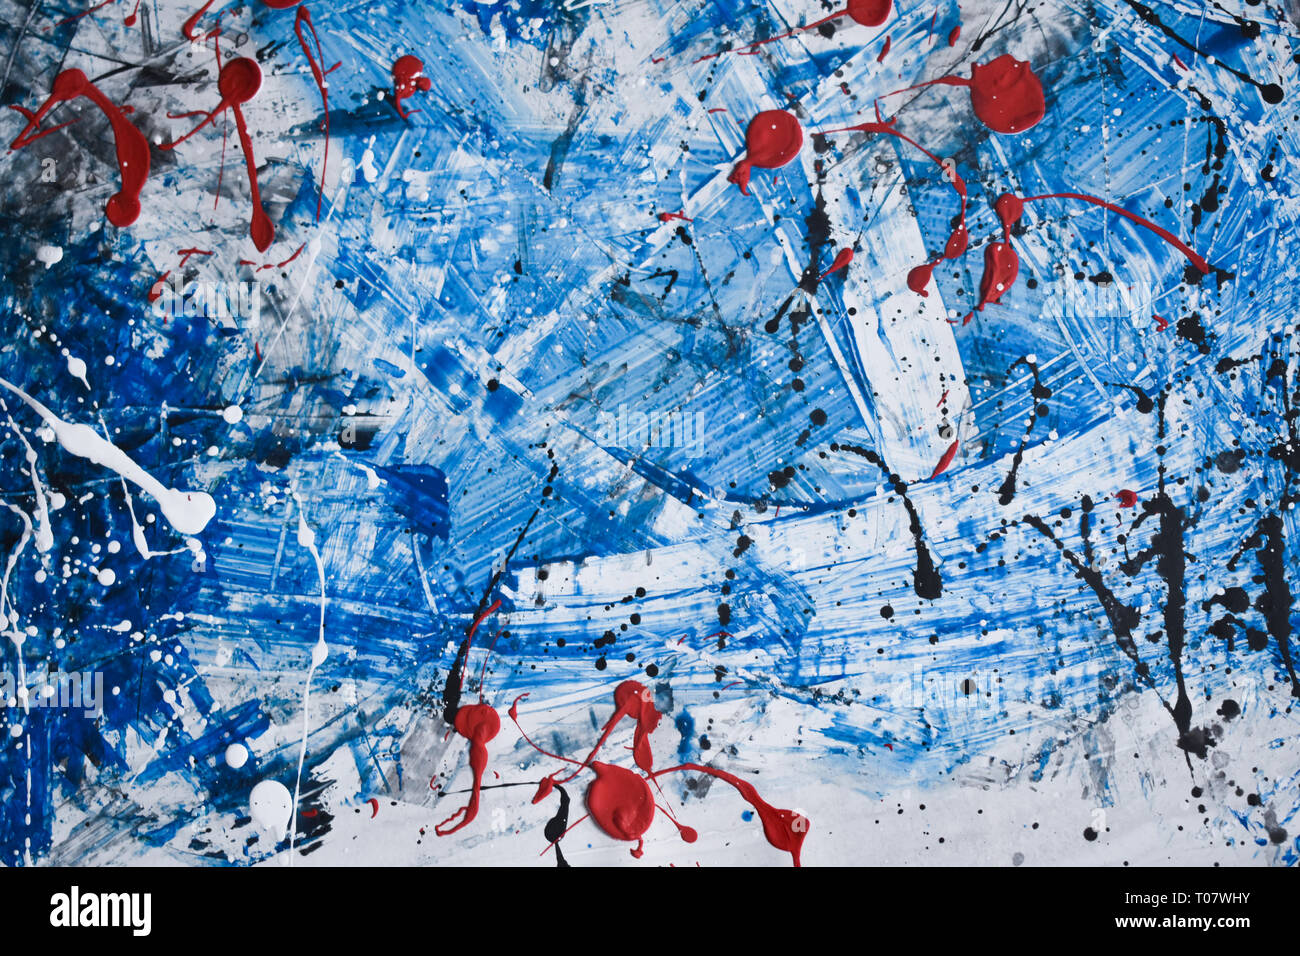 Schöne und interessante künstlerische abstrakte splatter Malerei mit Blau als dominierende Farbe, Acryl Malerei Stockfoto